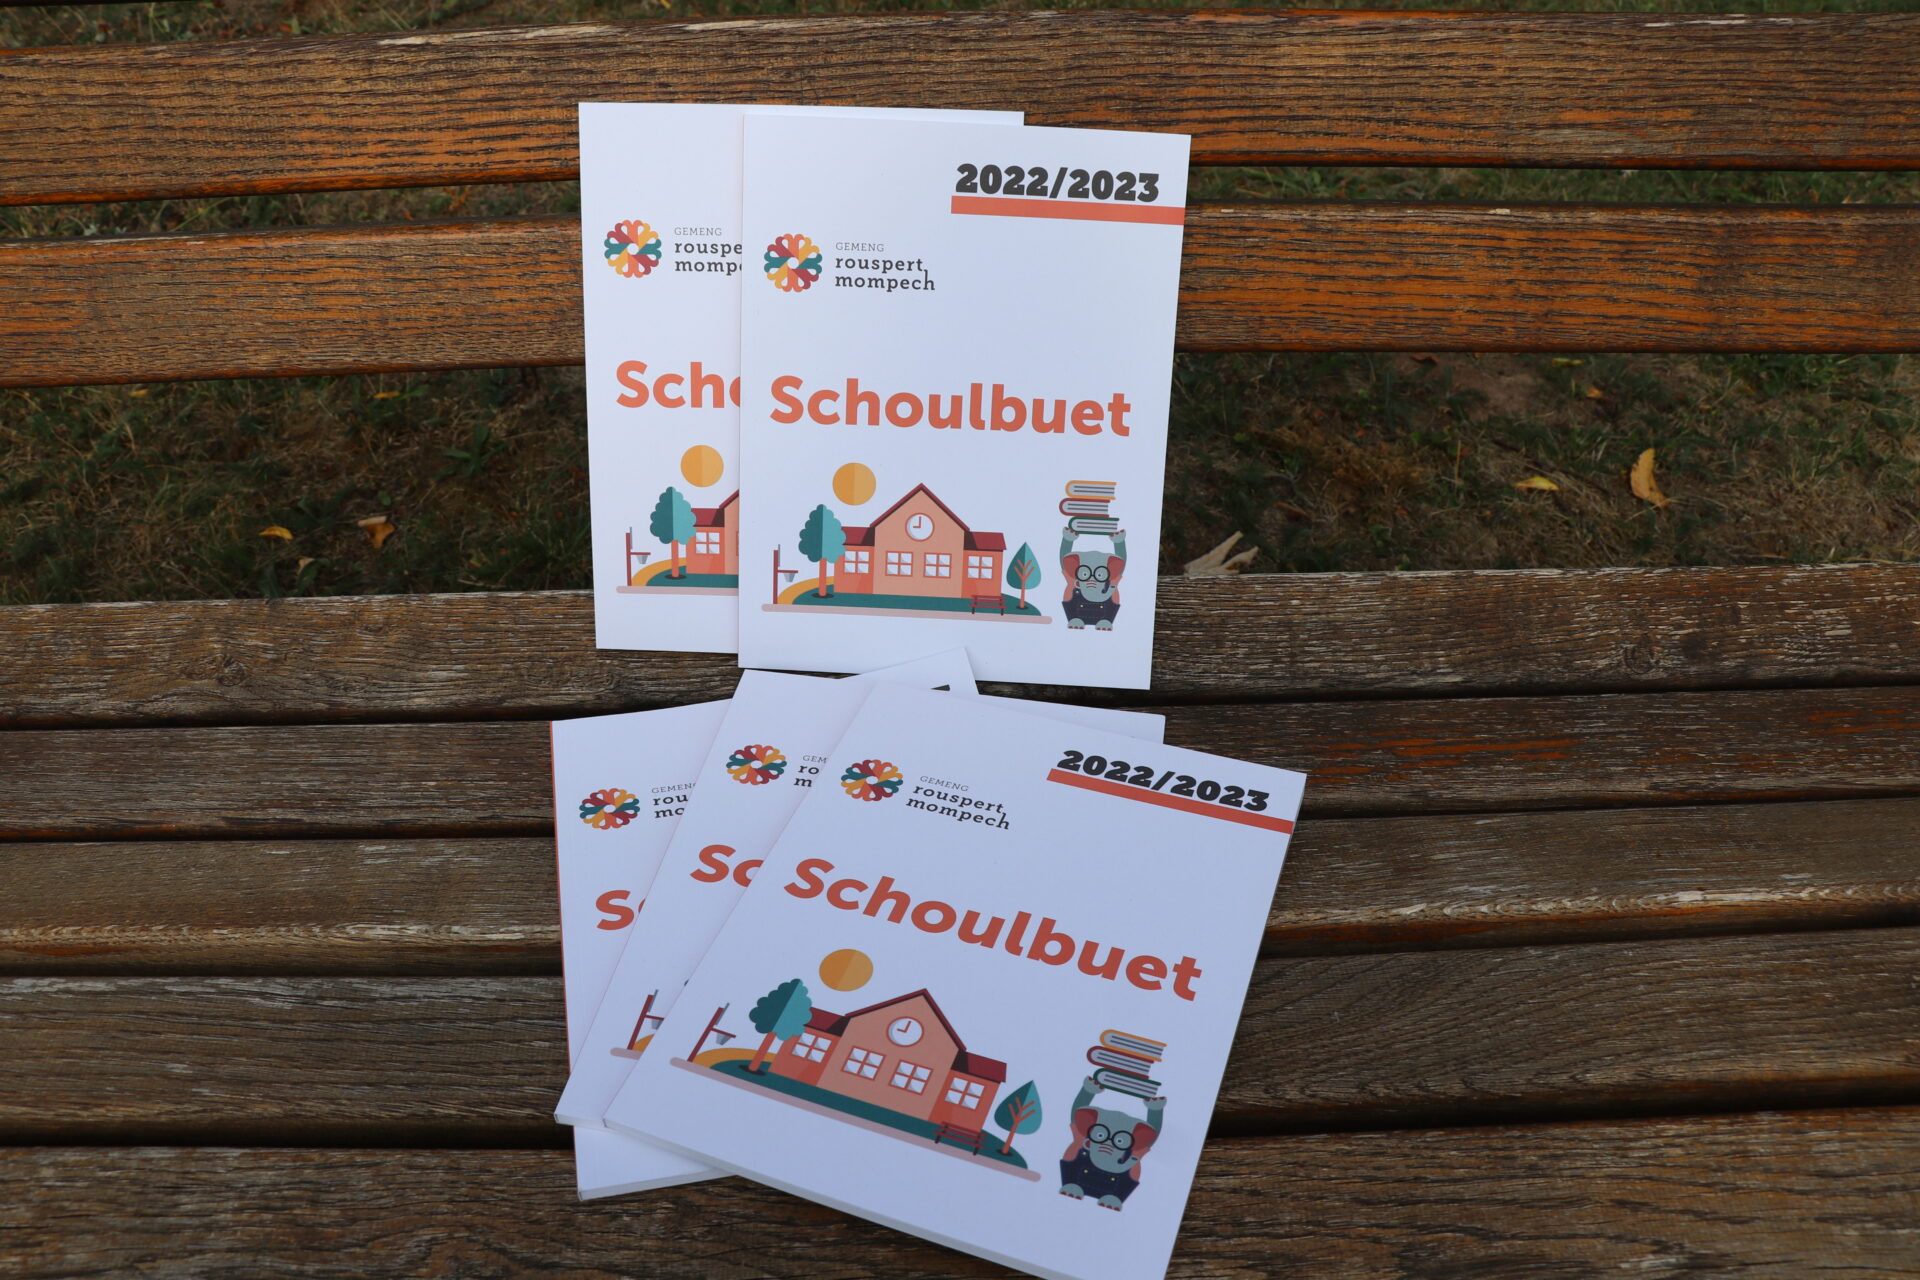 Schoulbuet 2022/2023